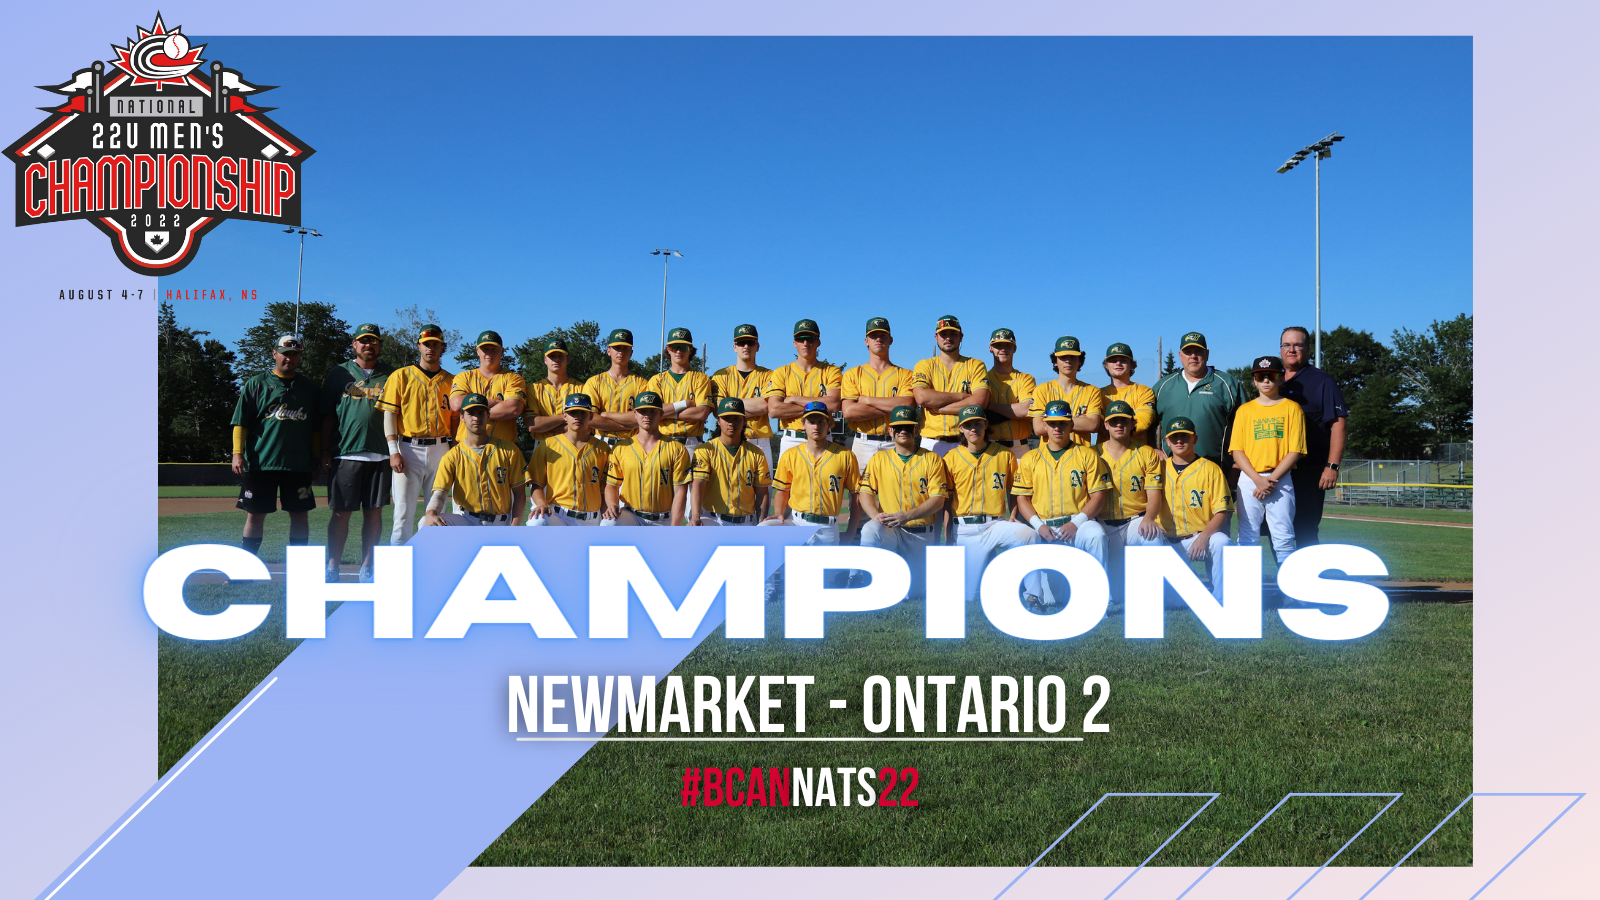 Championnats canadiens : Newmarket remporte le titre chez les hommes 22U